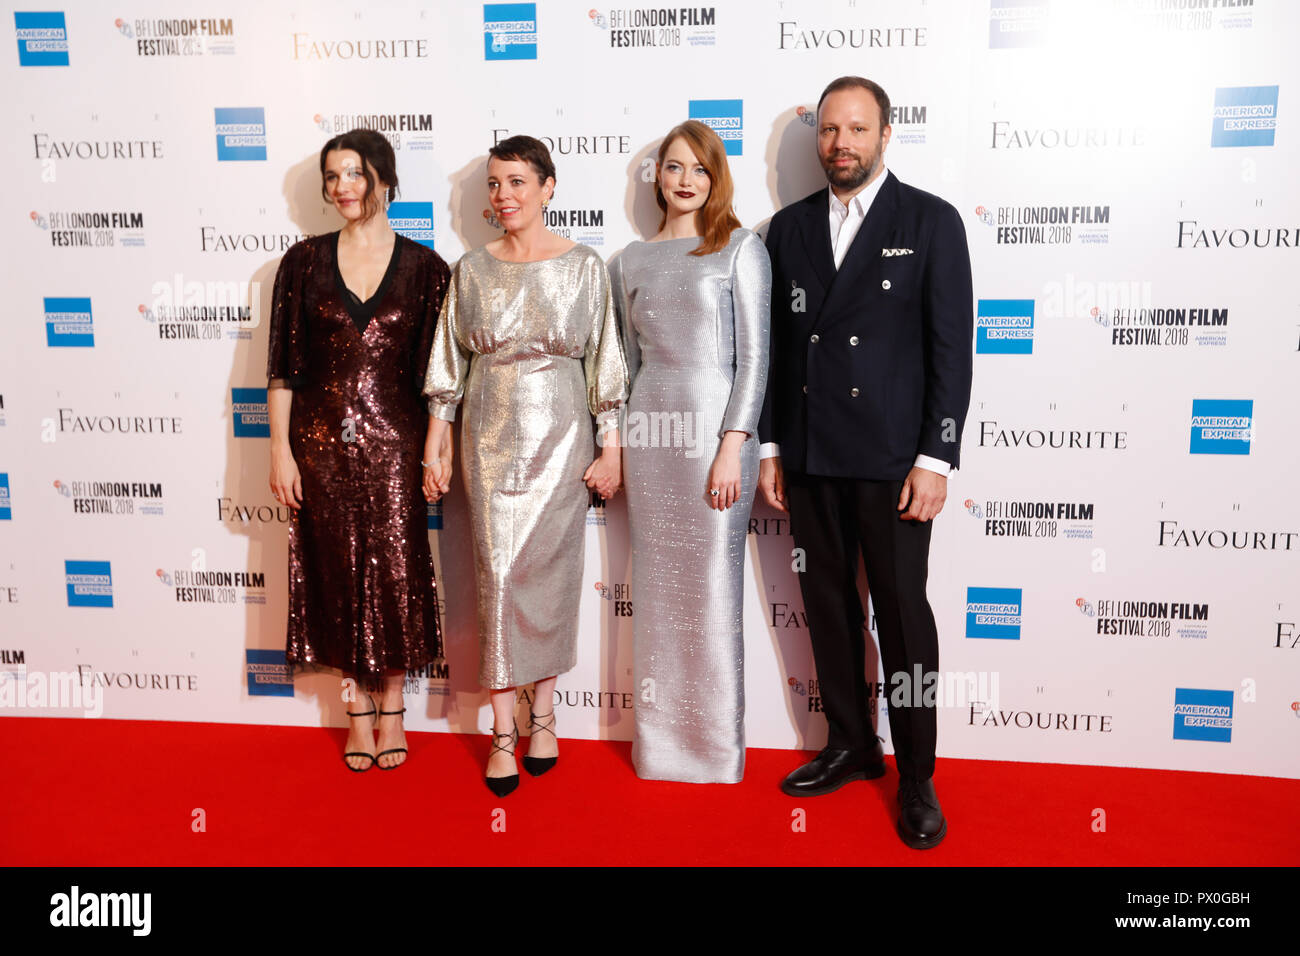 Rachel Weisz, Olivia Colman, Emma Stone et Yorgos Lanthimos participant à la UK premiere du favori à la BFI Southbank pour la 62e session de BFI London Film Festival. Banque D'Images